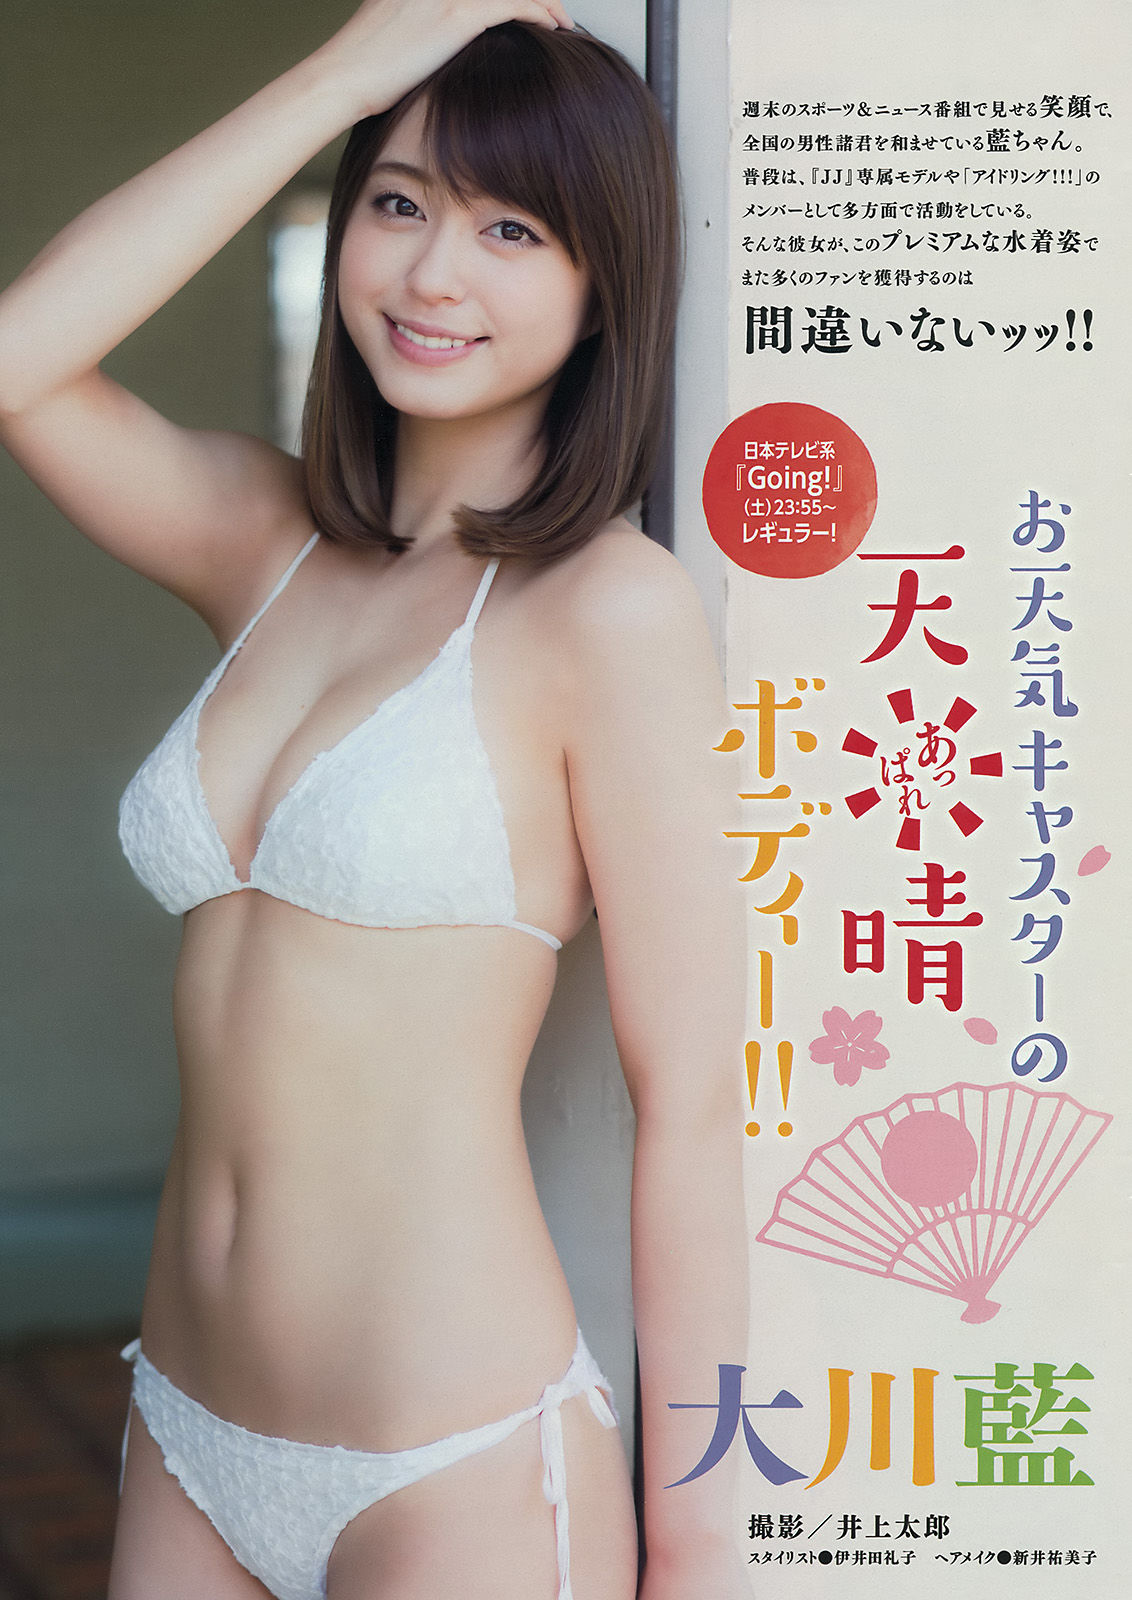 [Young Magazine] Okawa Blue, Tano Yuka, Murayama Ayaki 2015 No.31 Photo Magazine Page 3 No.ed9fab